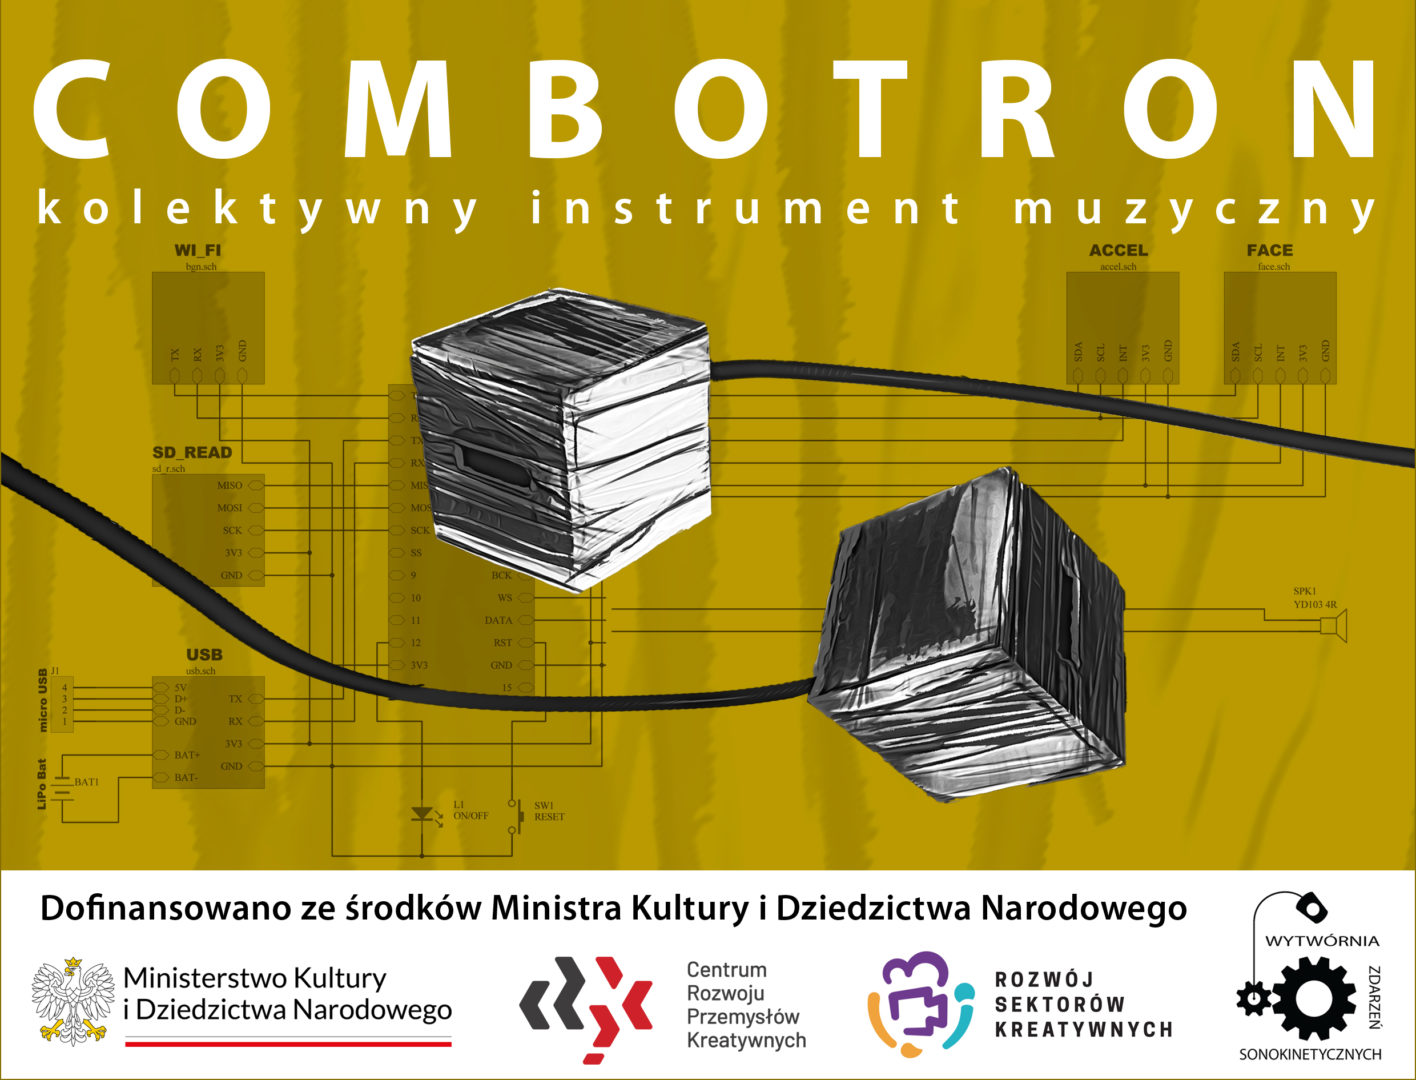 Combotron - kolektywny instrument muzyczny